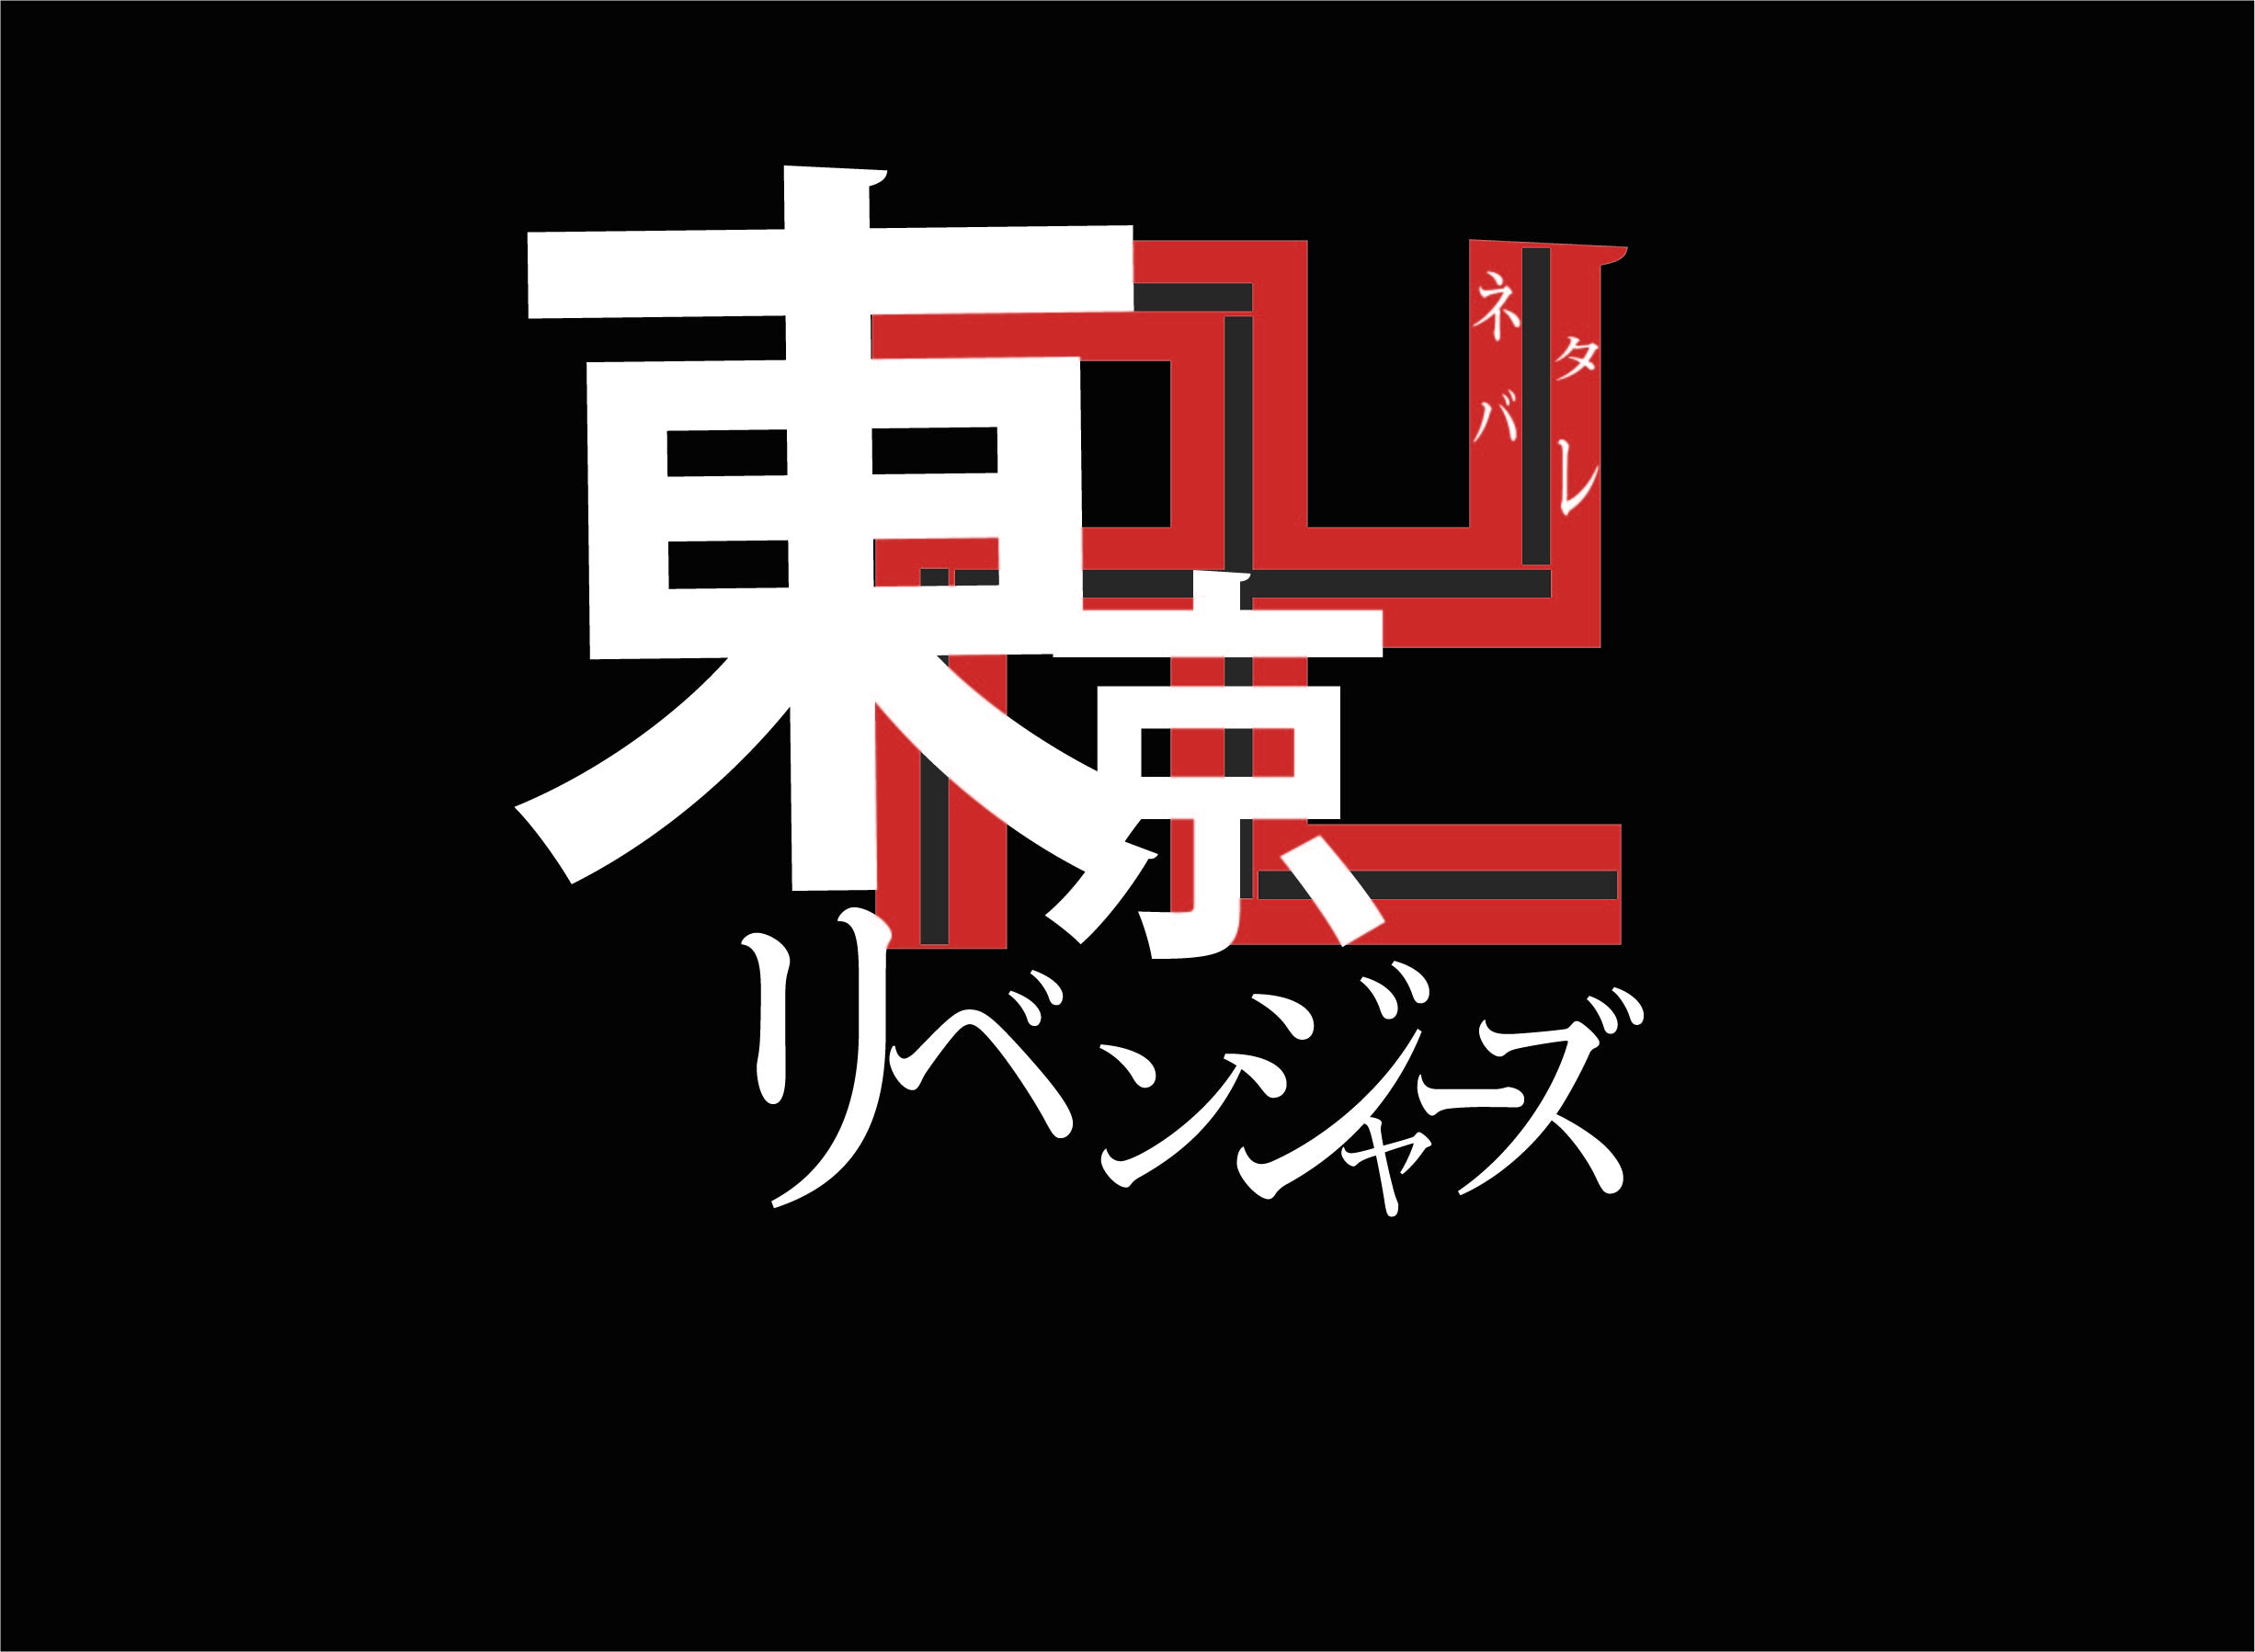 東京卍リベンジャーズ 153話ネタバレ感想 やってきた東卍 決戦始まる 漫画wave